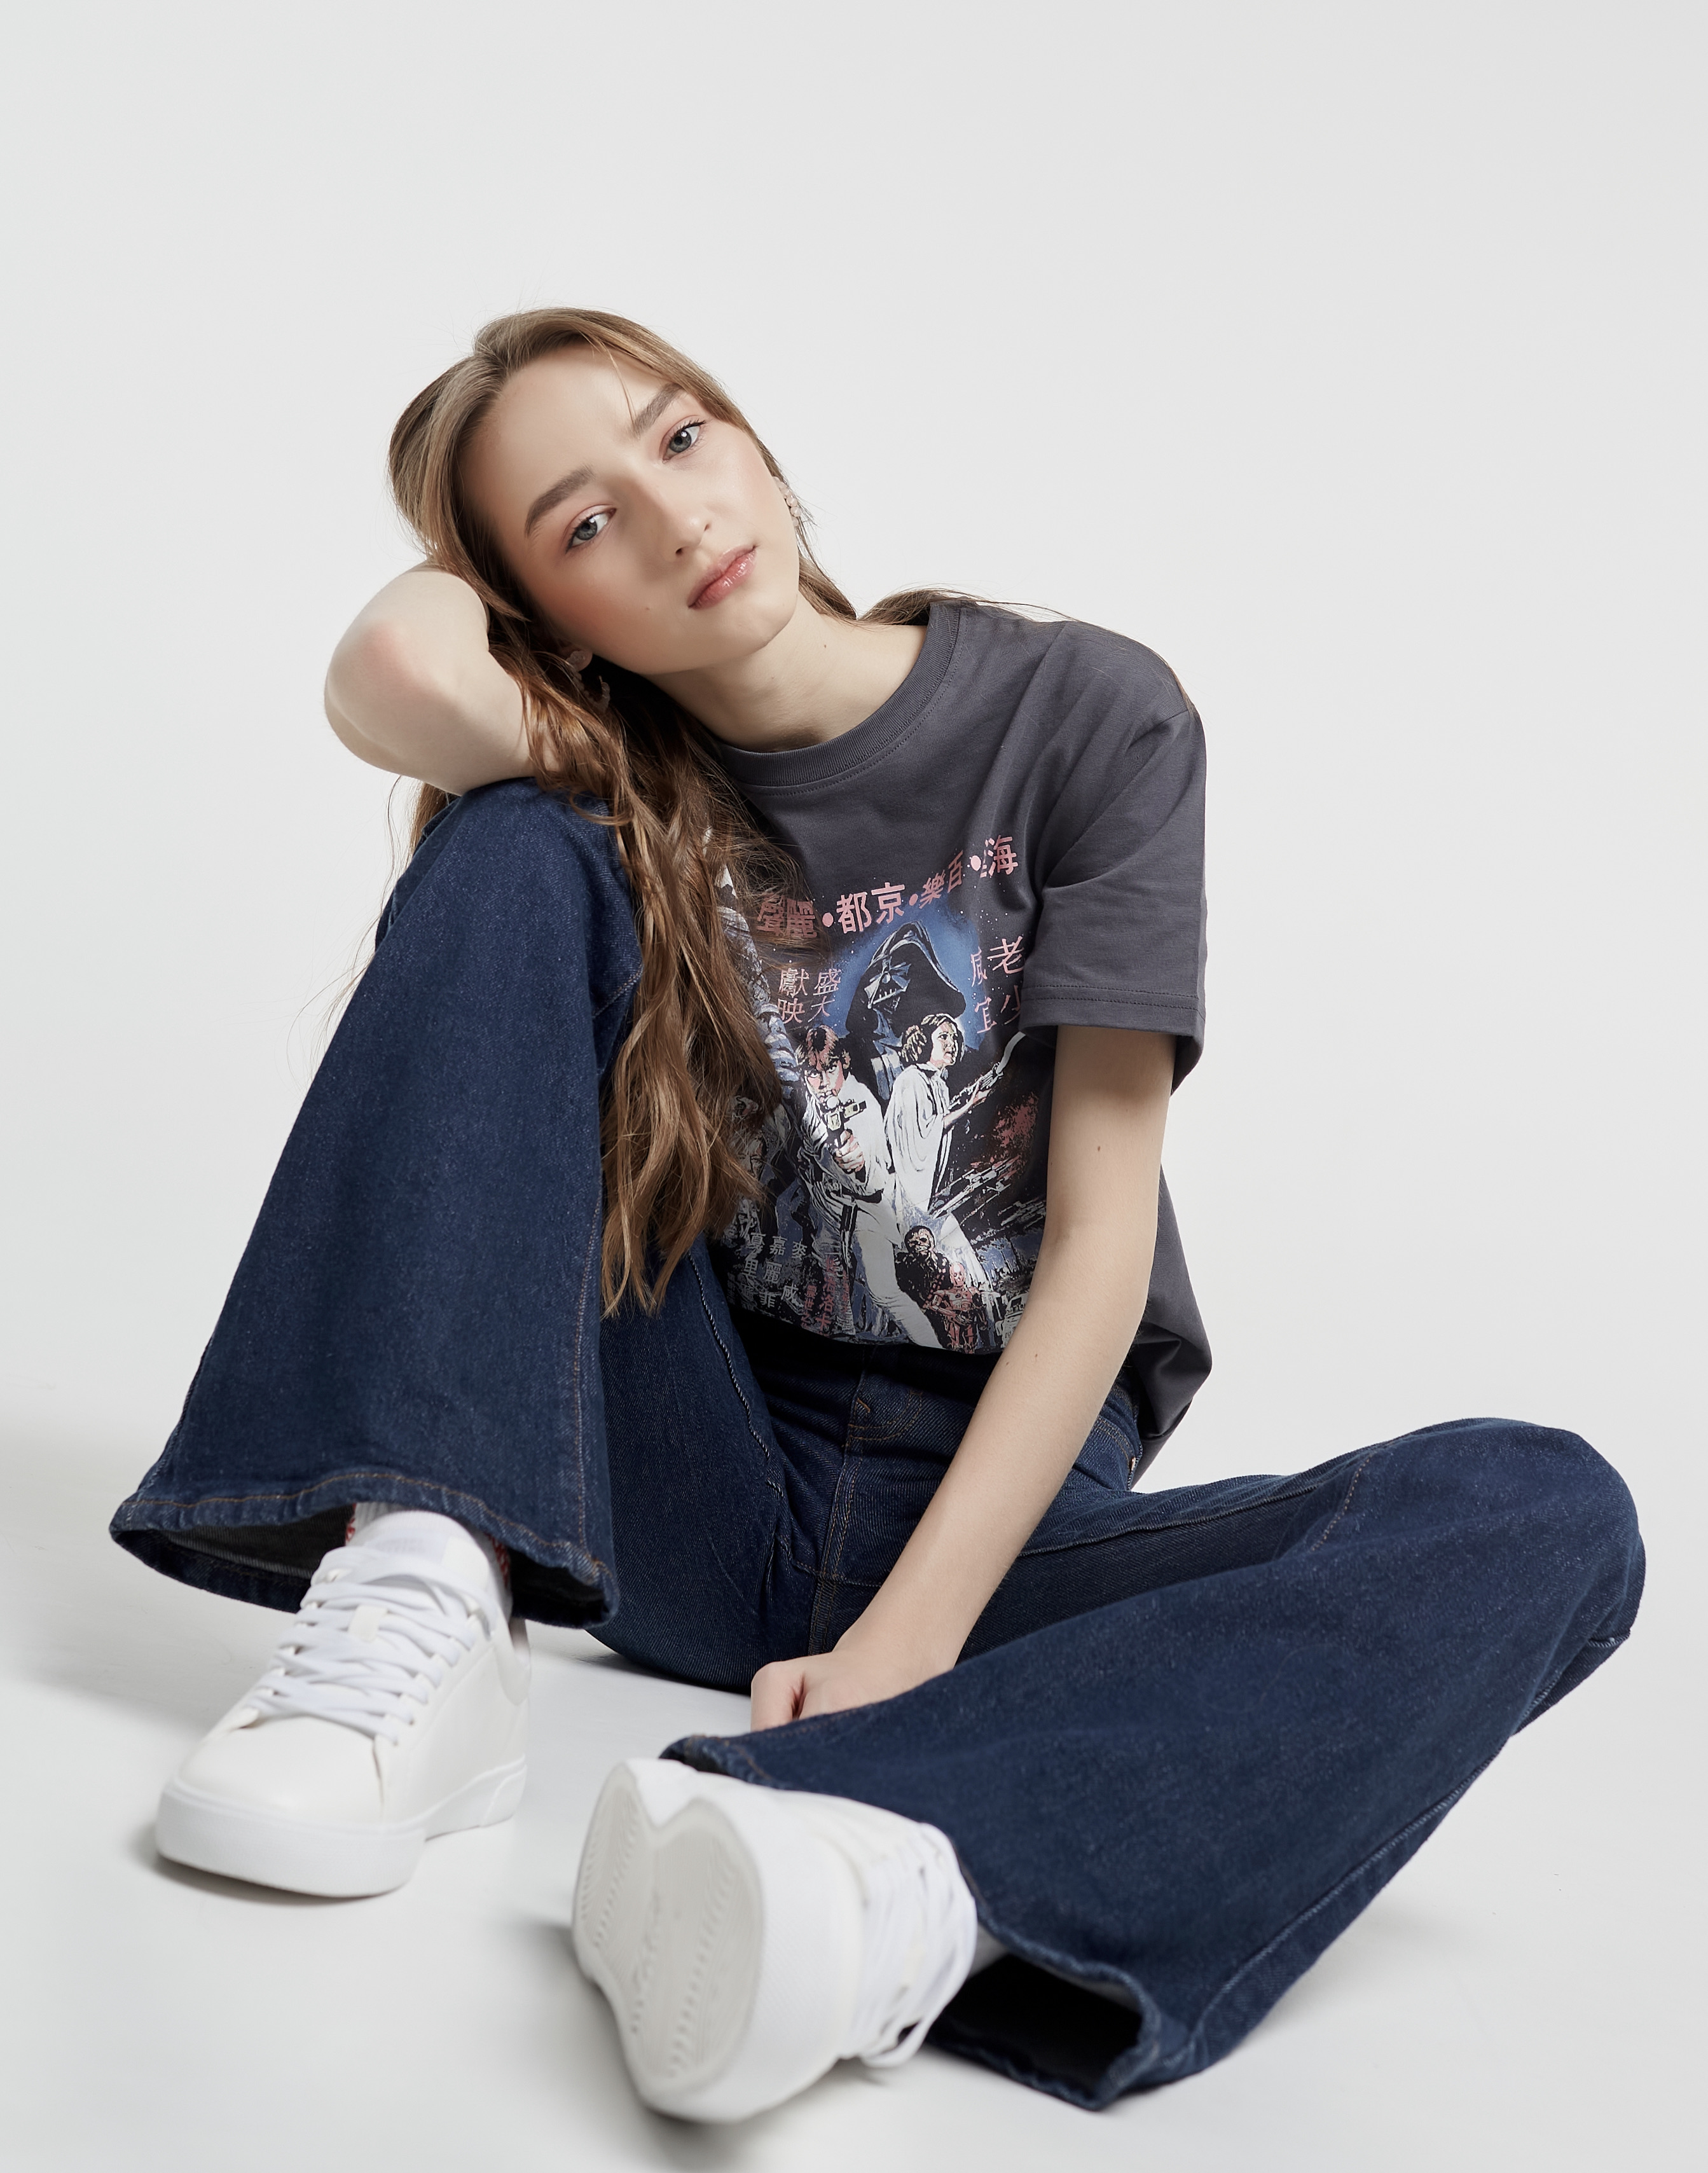 Kamilla | YOO Models